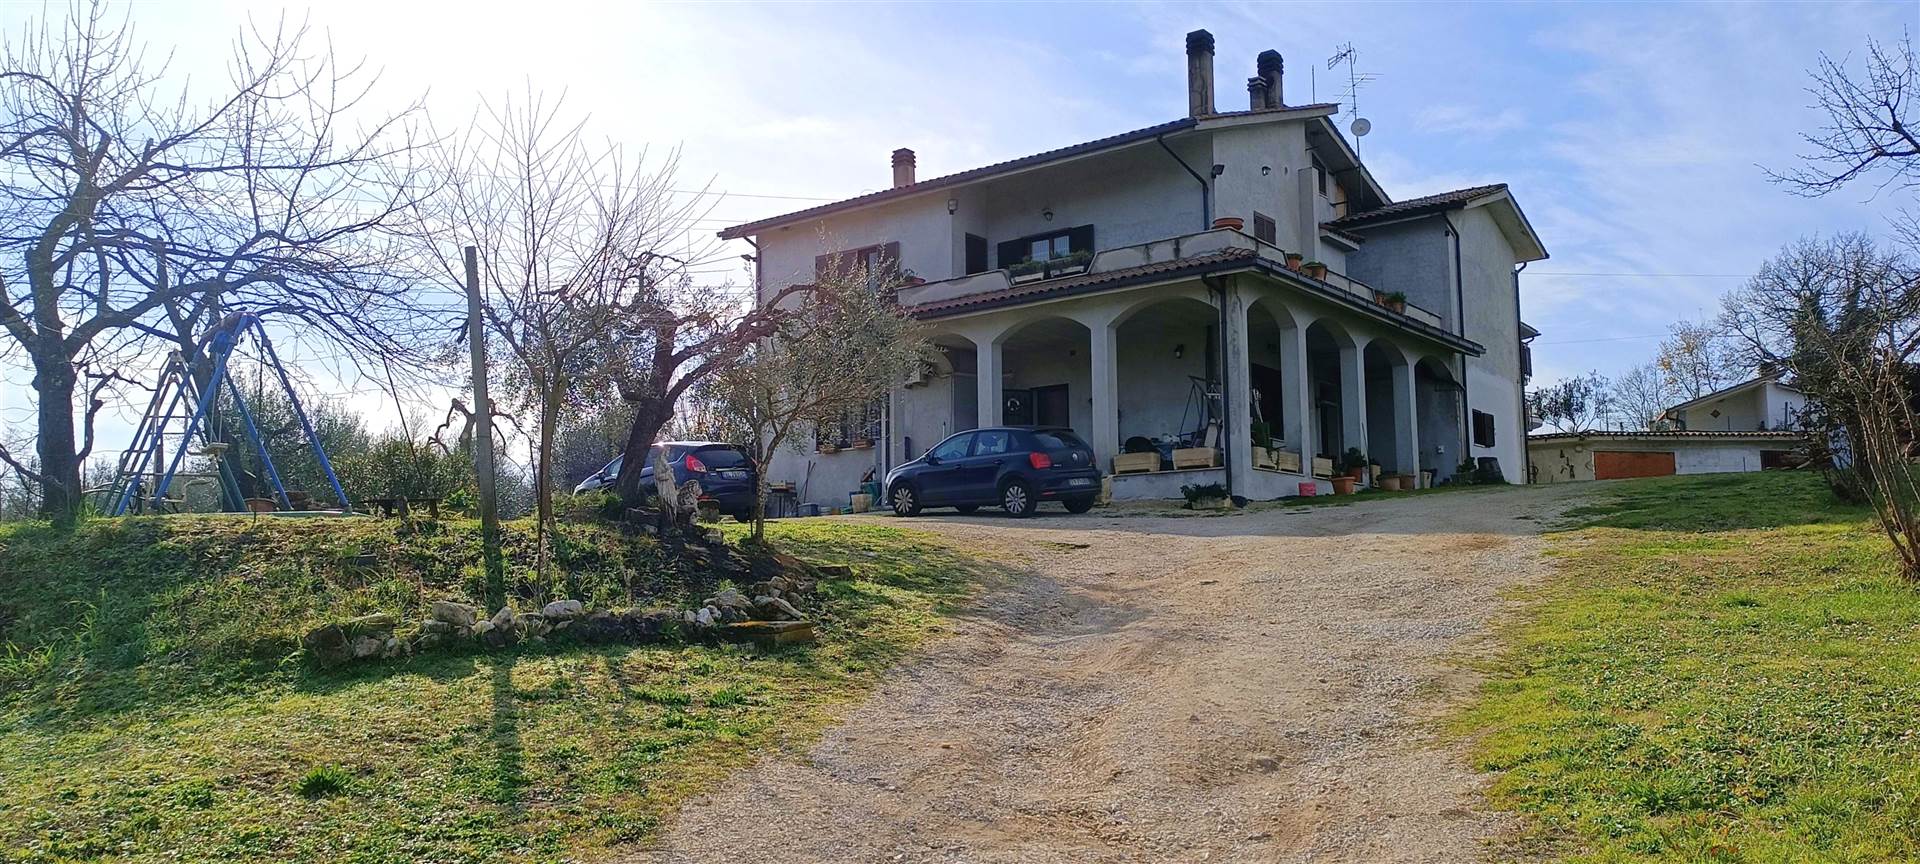 Villa in Vendita a Tarano